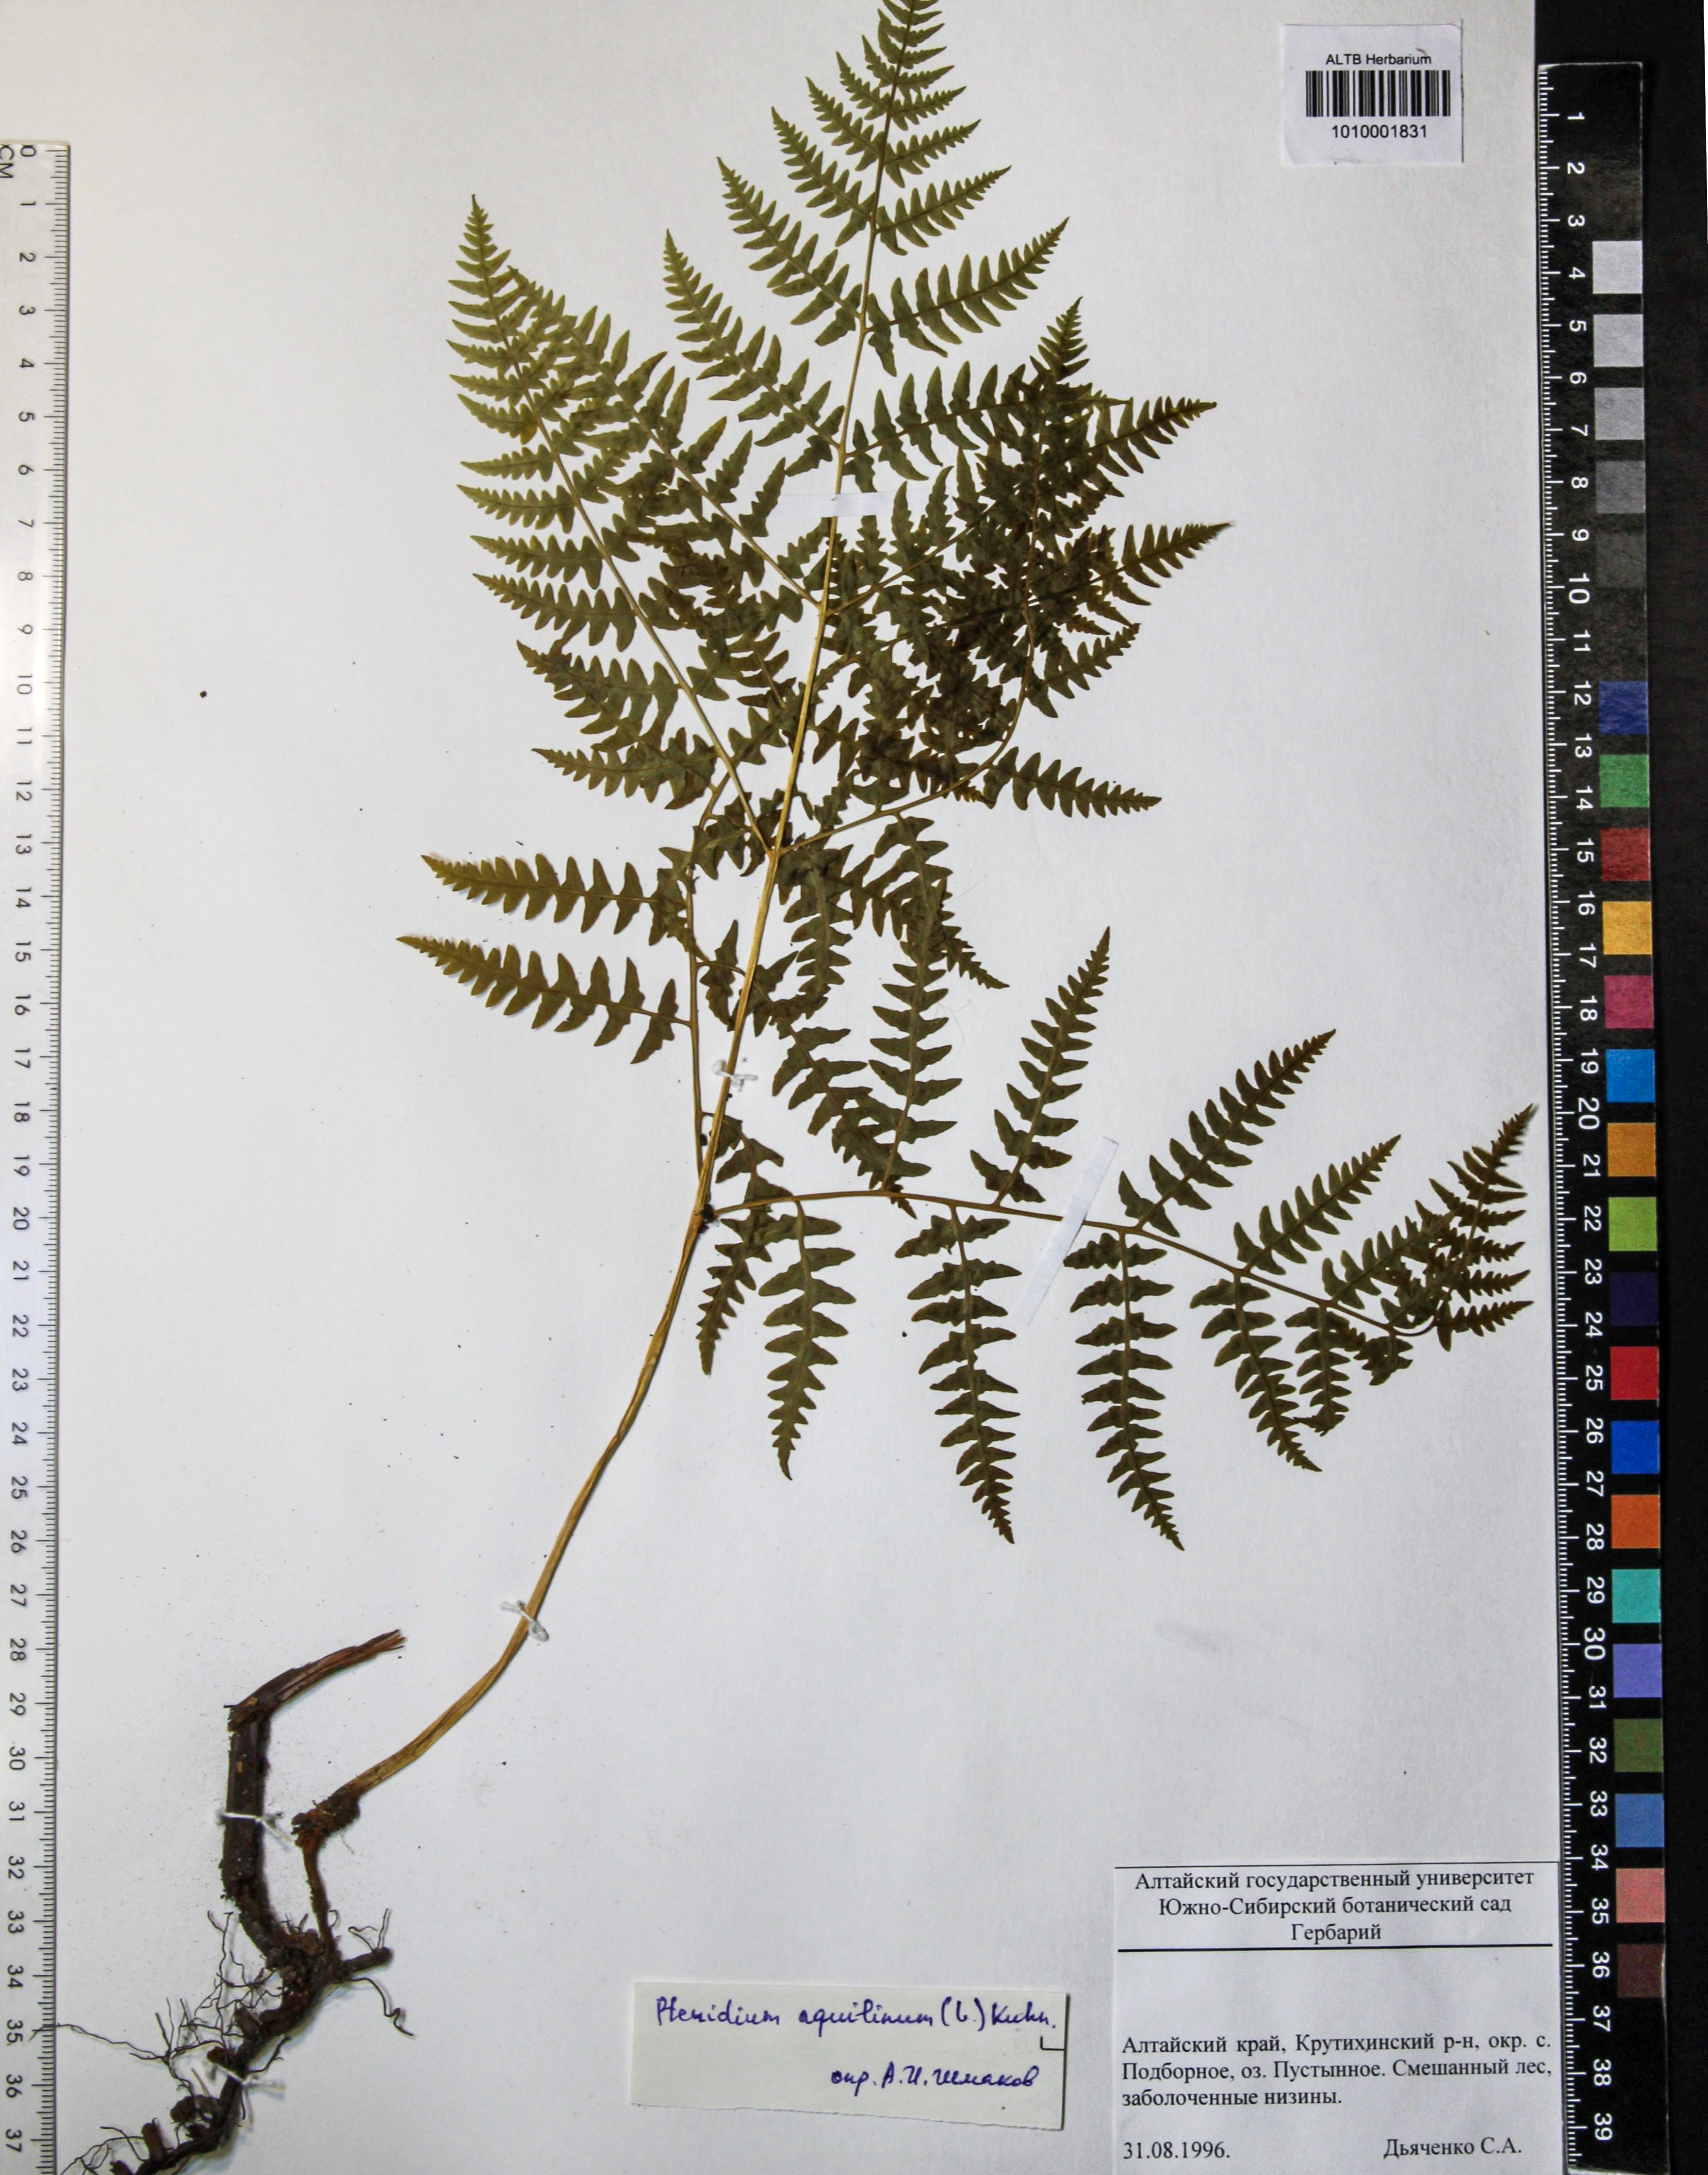 Dennstaedtiaceae,Pteridium pinetorum C.N. Page & R.R. Mill